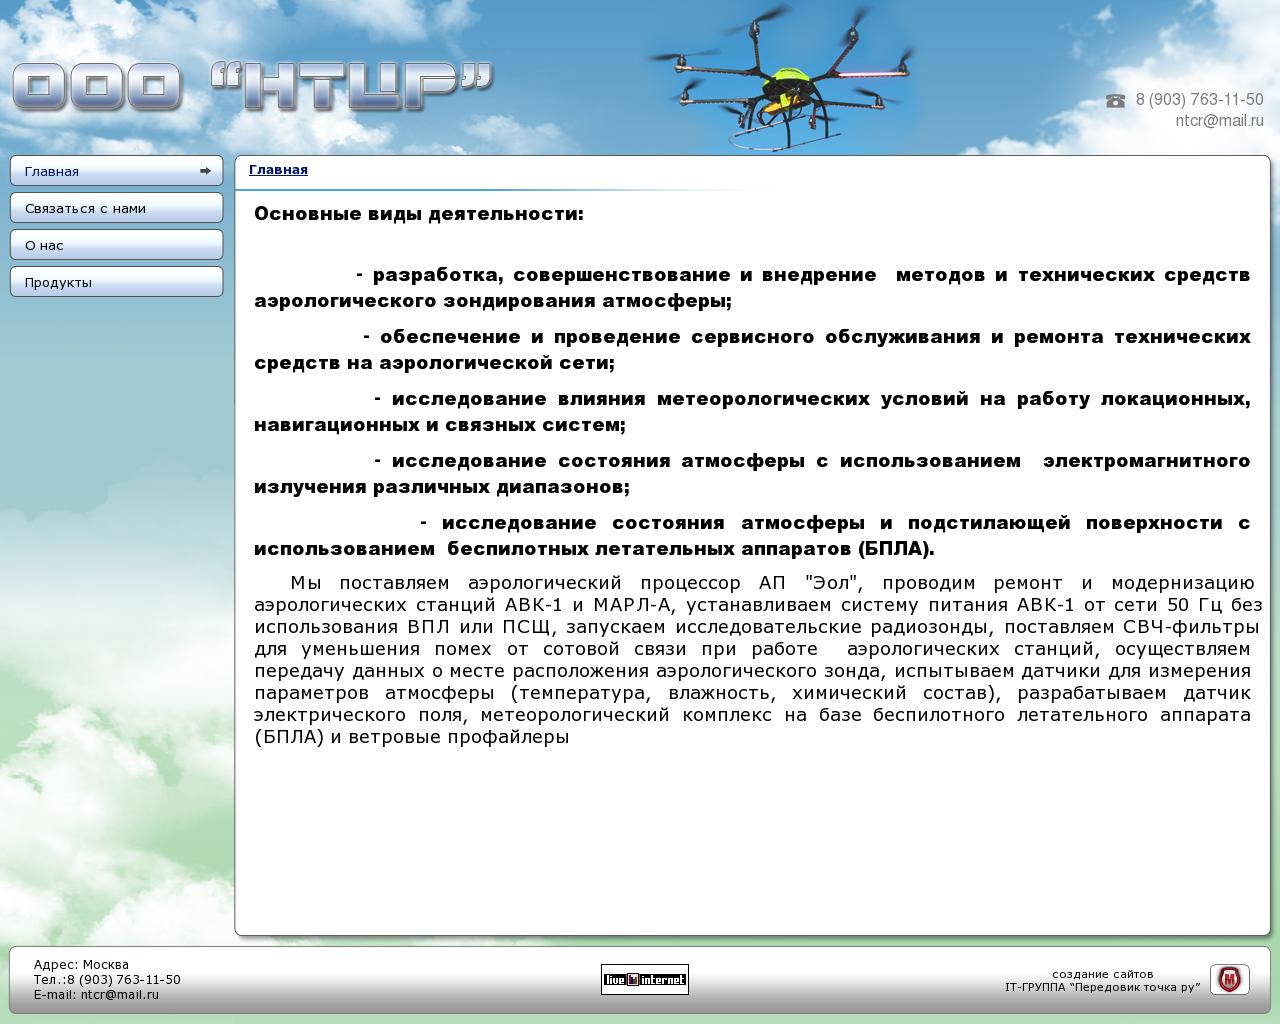 Изображение сайта sondaero.ru в разрешении 1280x1024